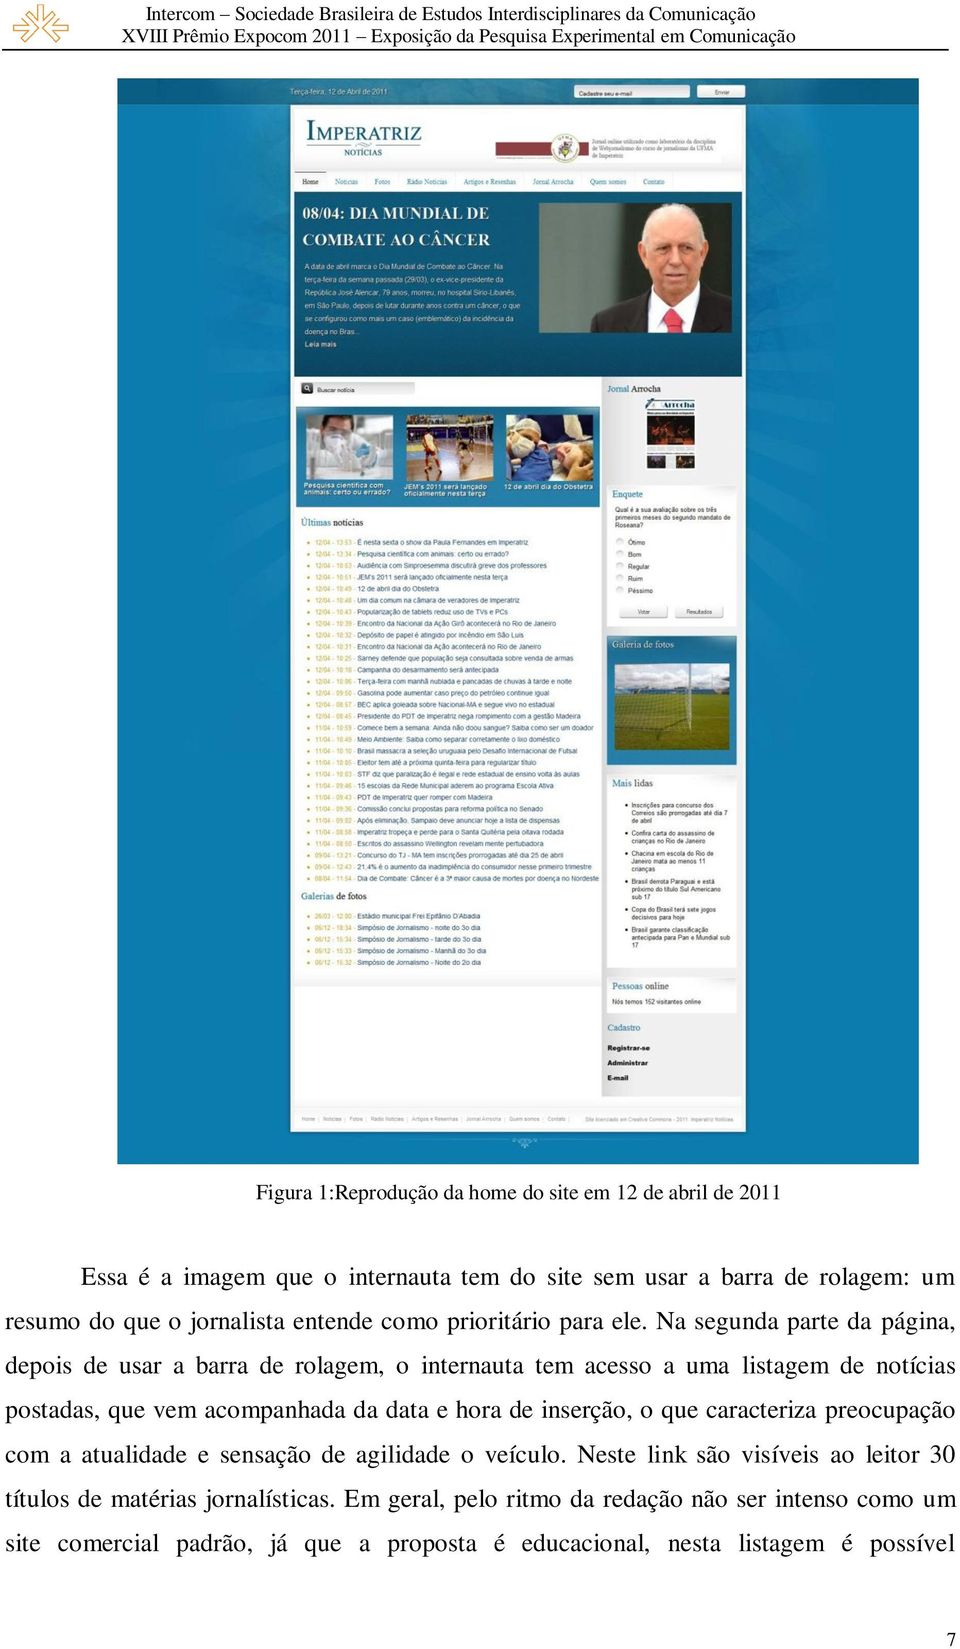 Na segunda parte da página, depois de usar a barra de rolagem, o internauta tem acesso a uma listagem de notícias postadas, que vem acompanhada da data e hora de